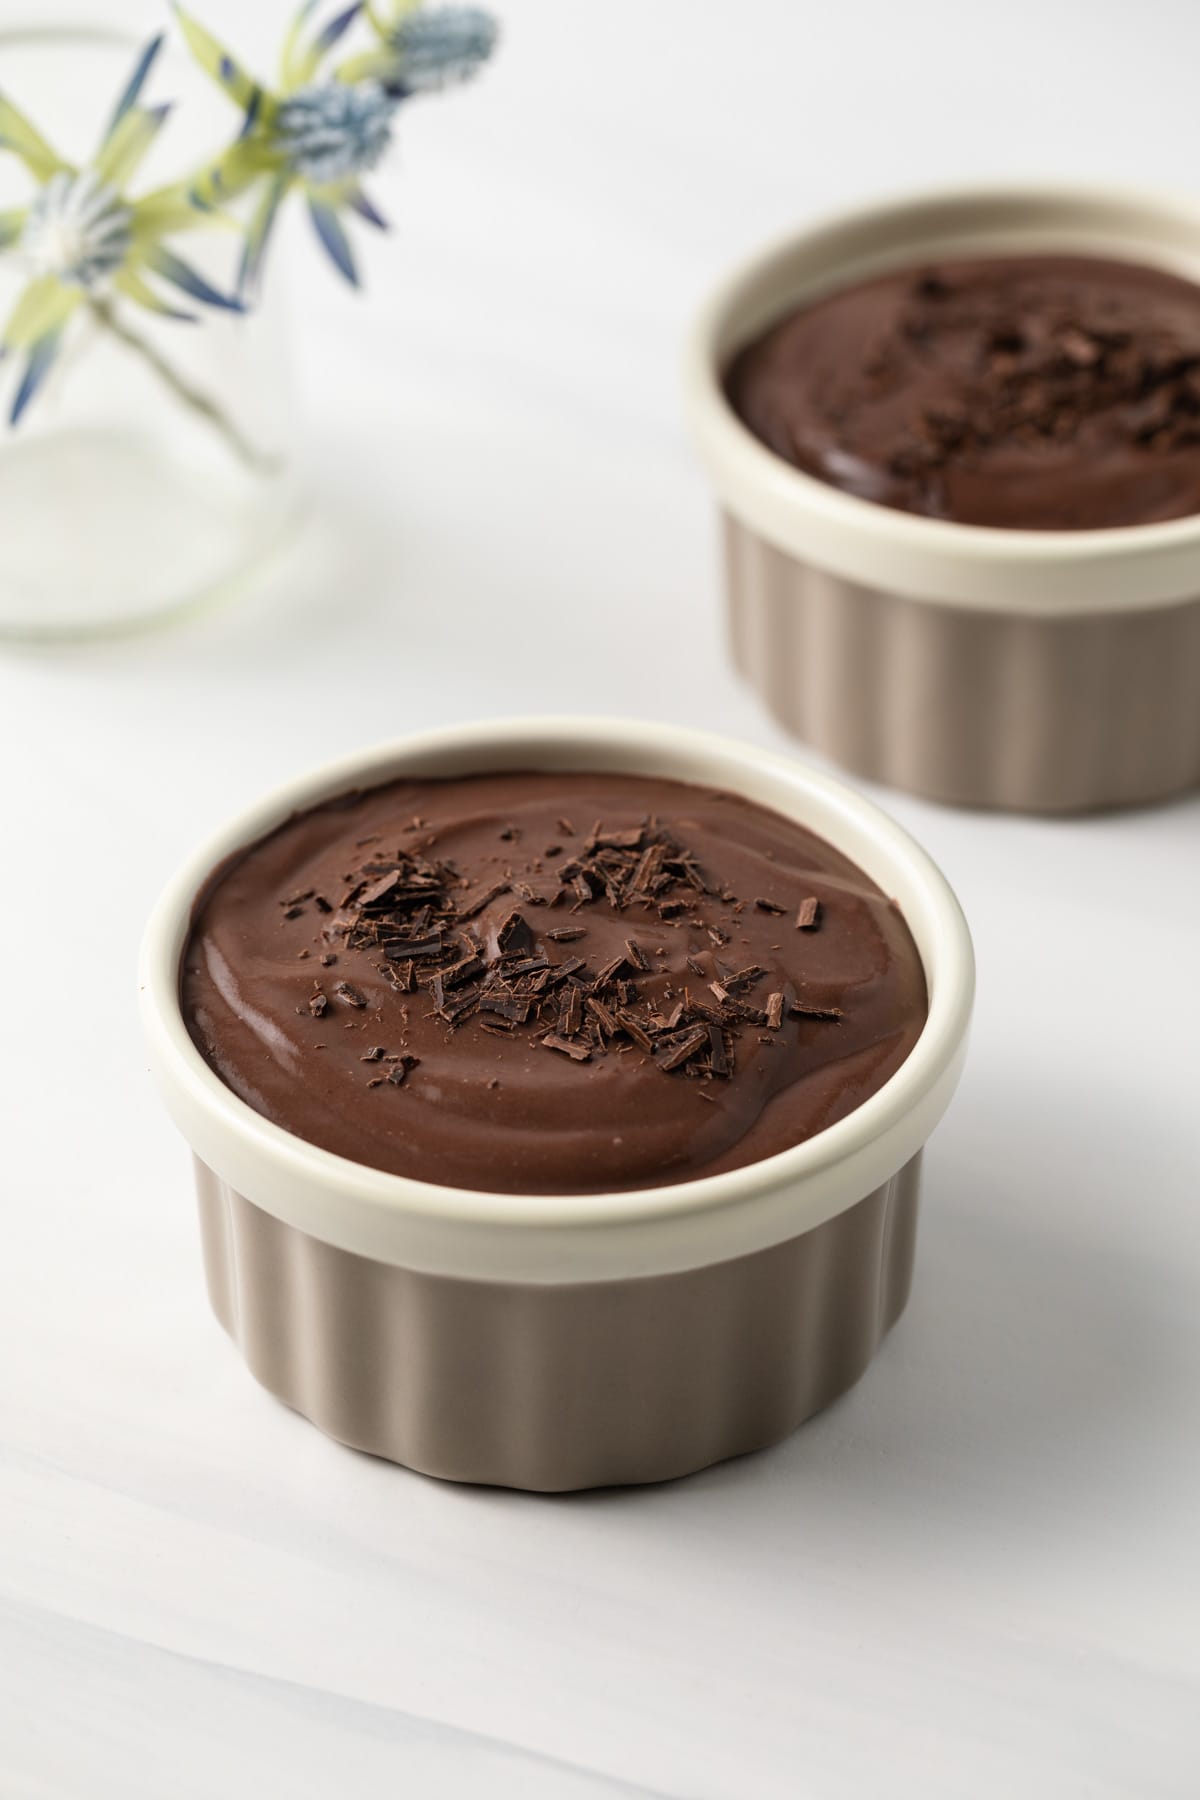 chocolate pudding in ramekins.